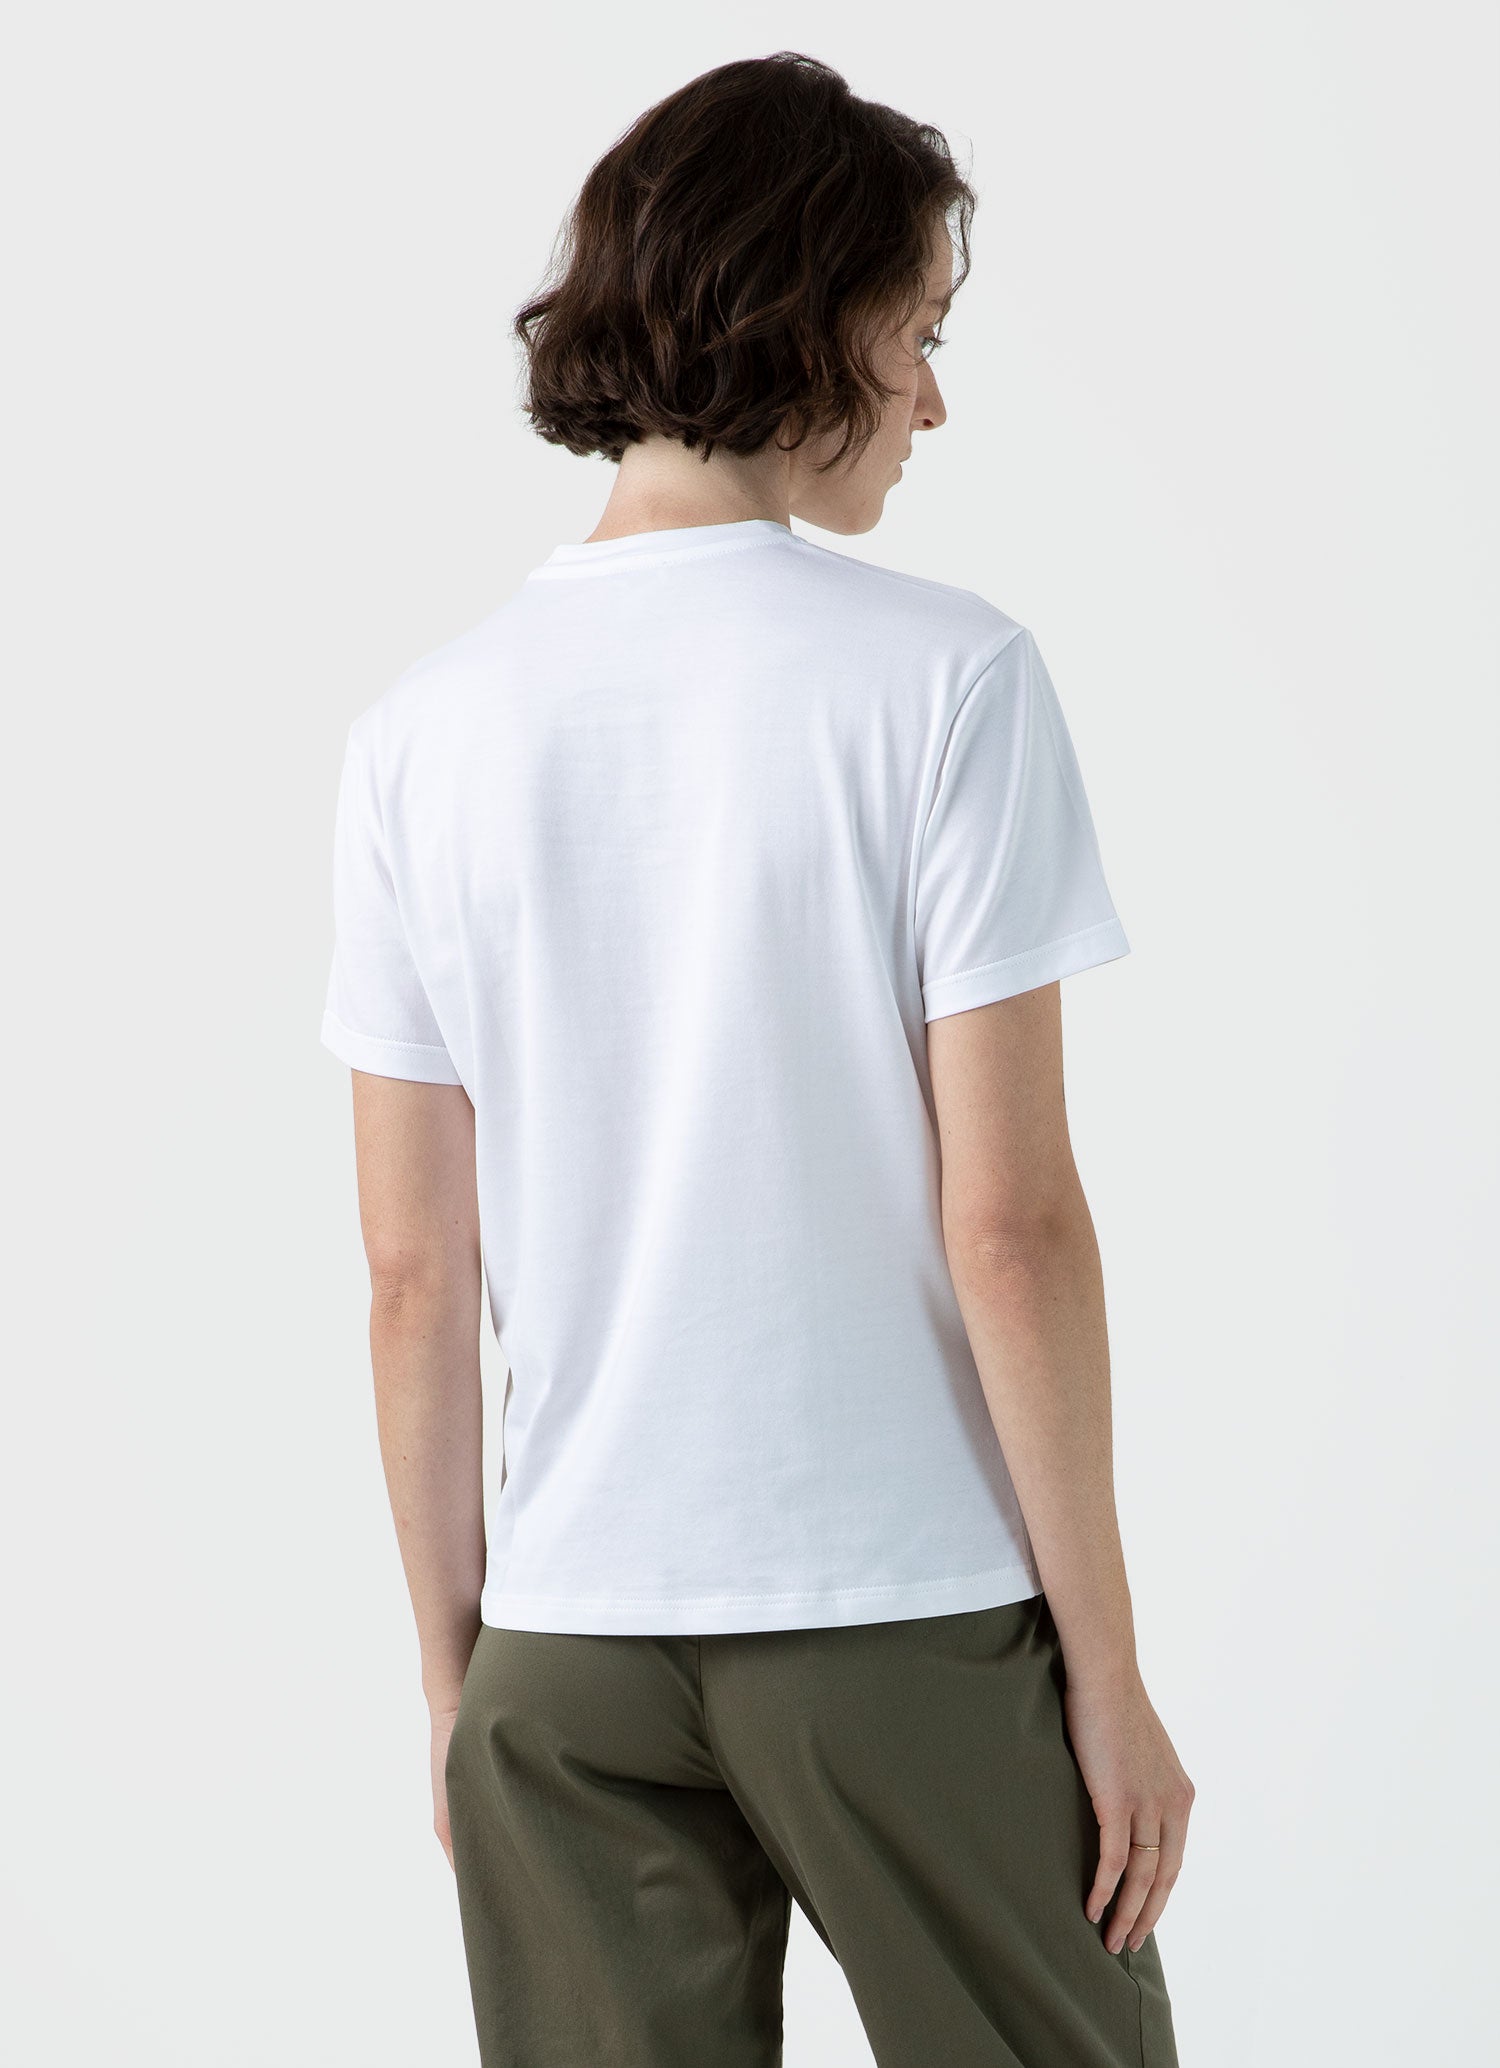 Women's Boy Fit T-shirt in White